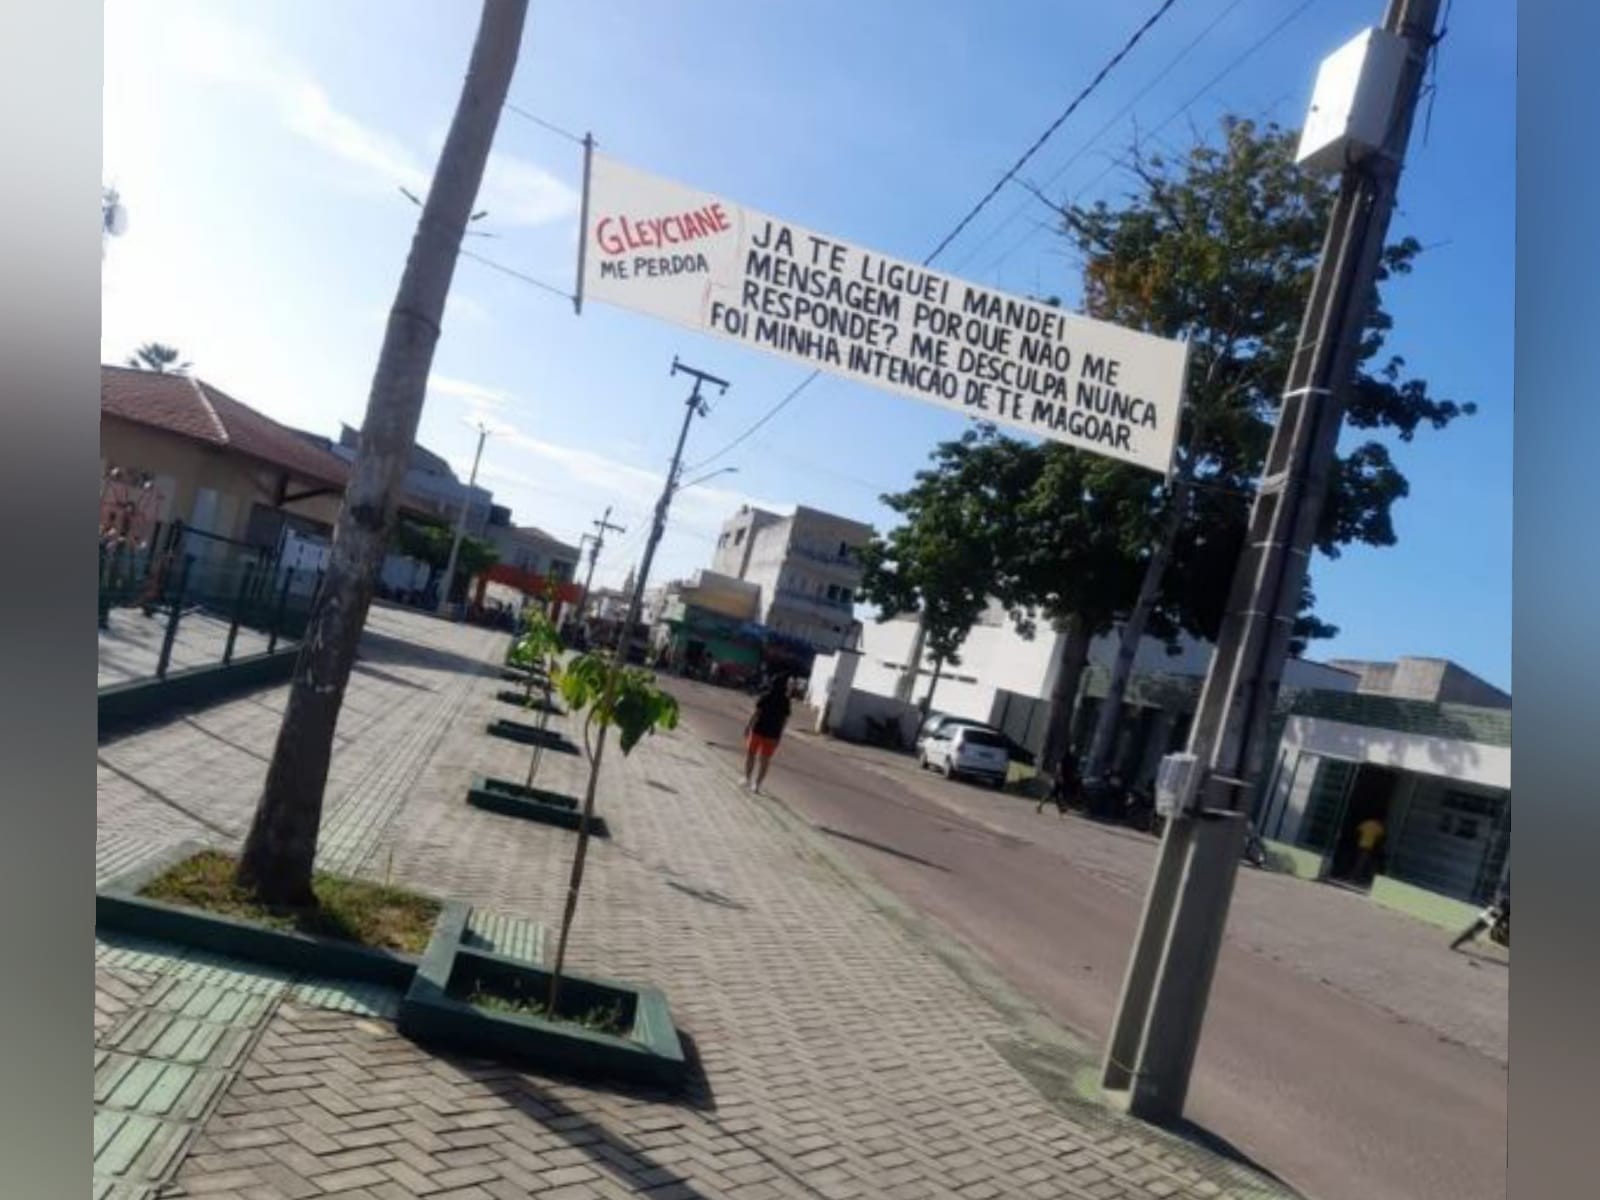 Após 'loucura de amor', jovem tenta reconquistar a ex-namorada com faixa pendurada em praça de cidade do Ceará: 'Me perdoa'